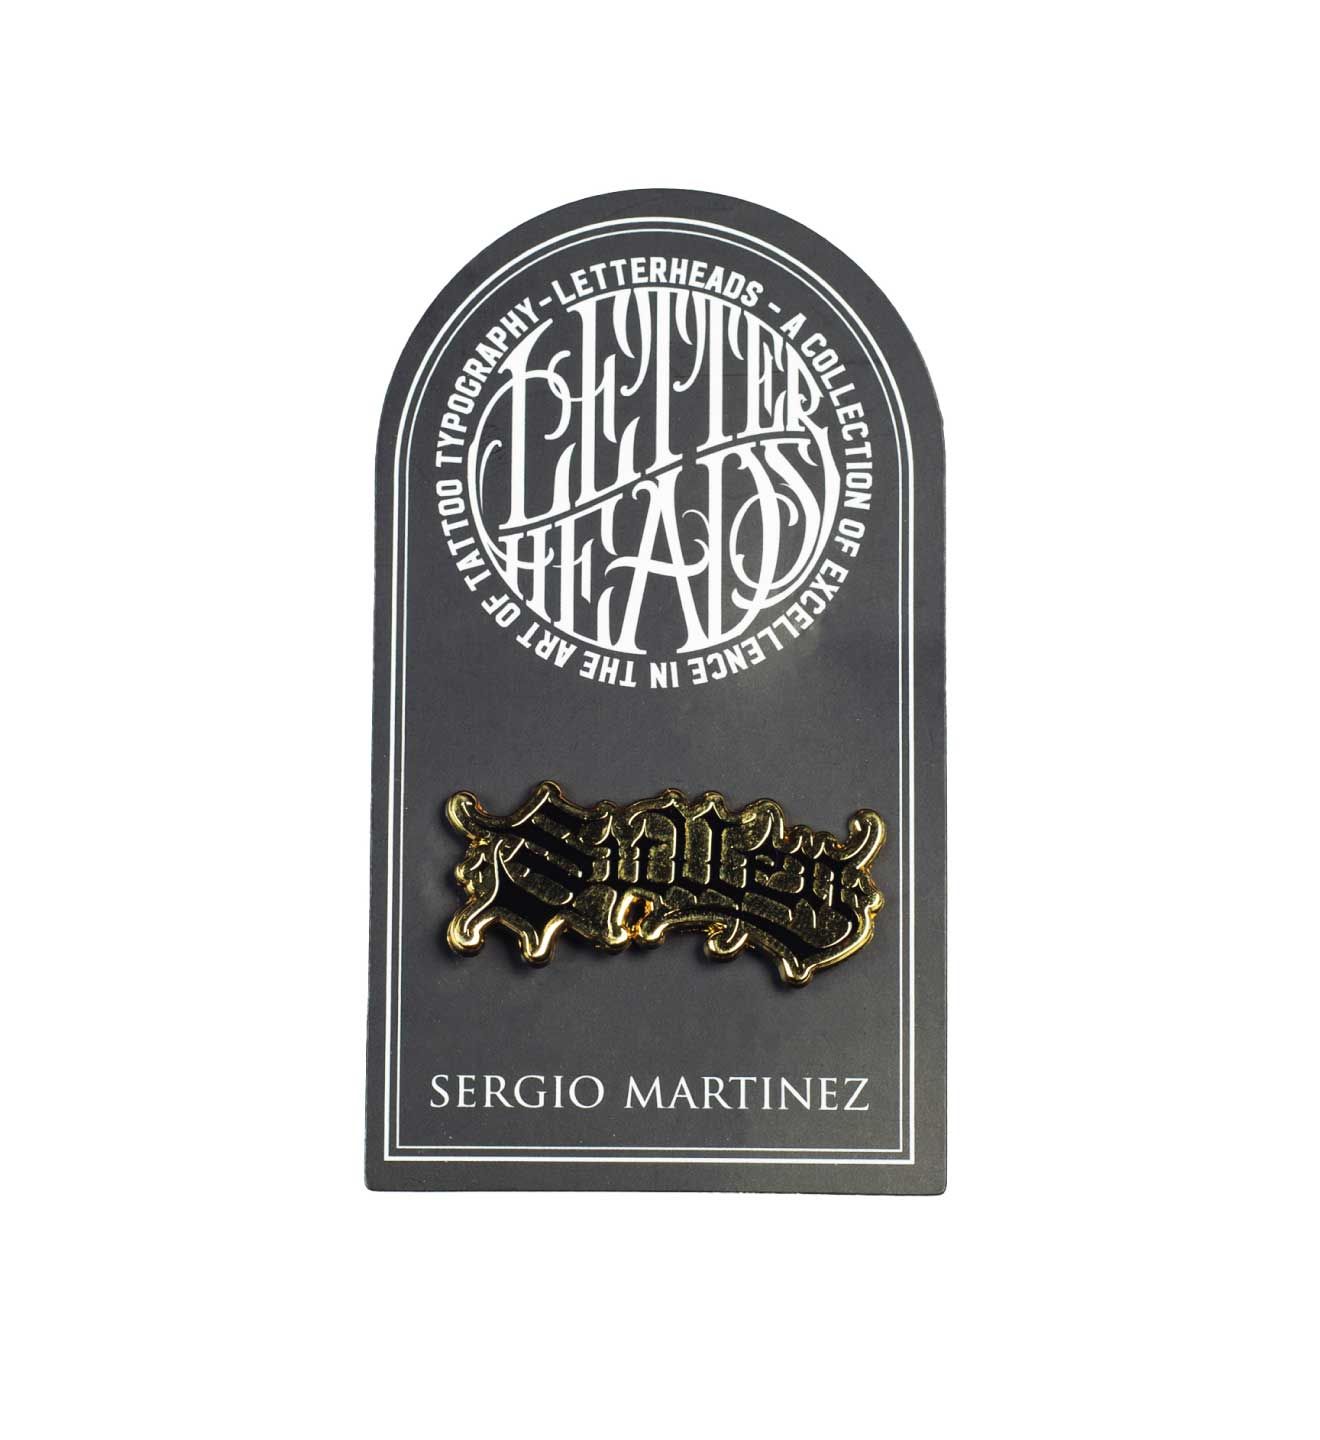 LETTERHEADS #15 - Sergio Martinez - @sergionegative - 